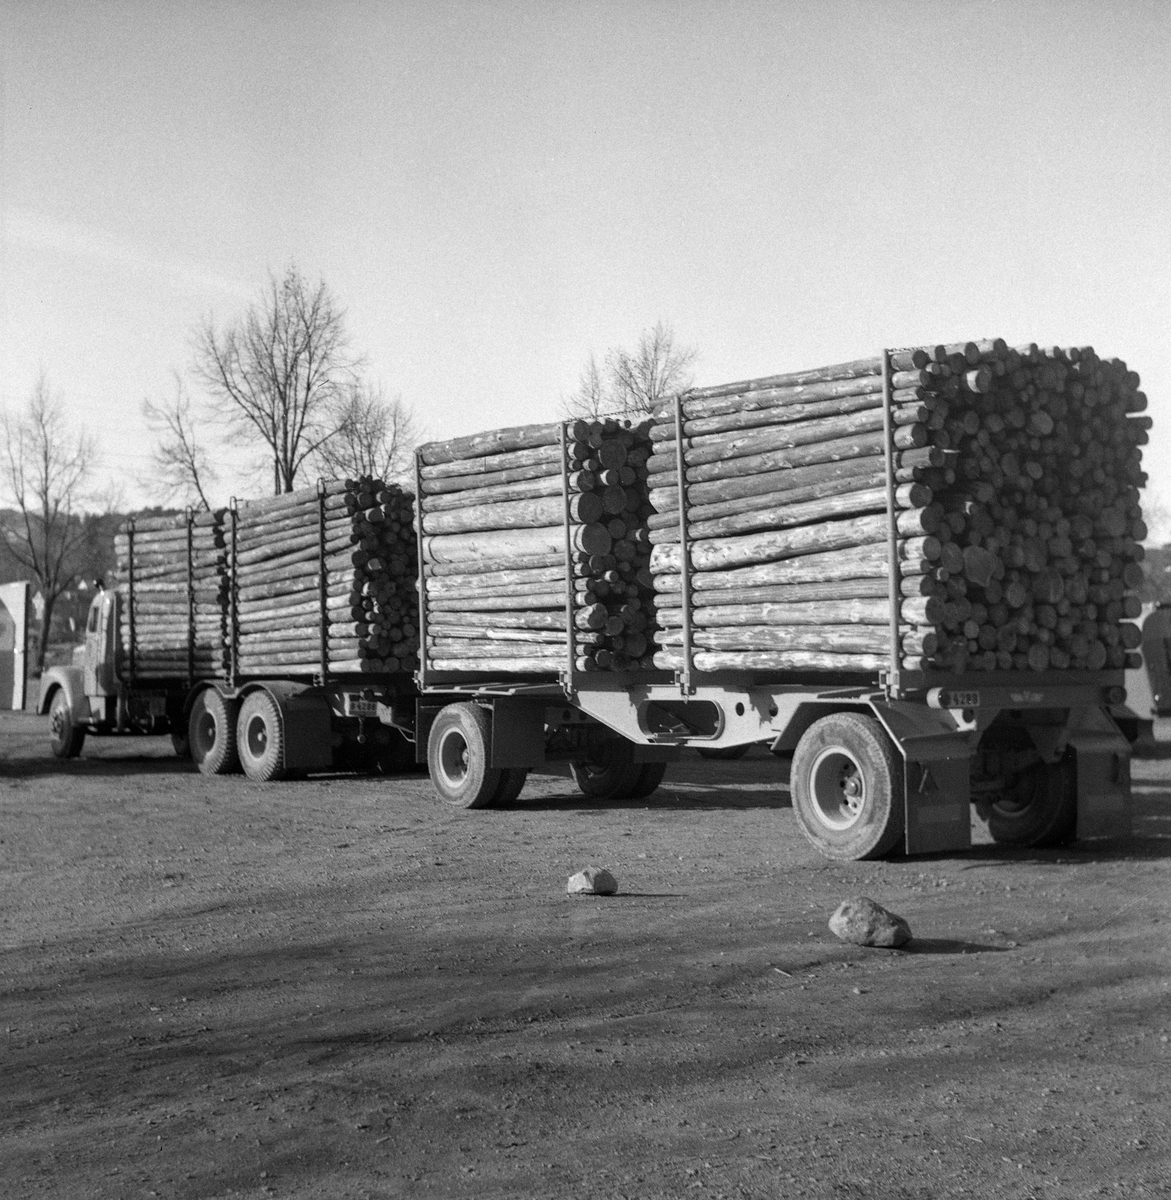 Tømmerkjøring med lastebil. Demonstrasjon. Bildet tatt i forbindelse med artikkel i Skogeieren.